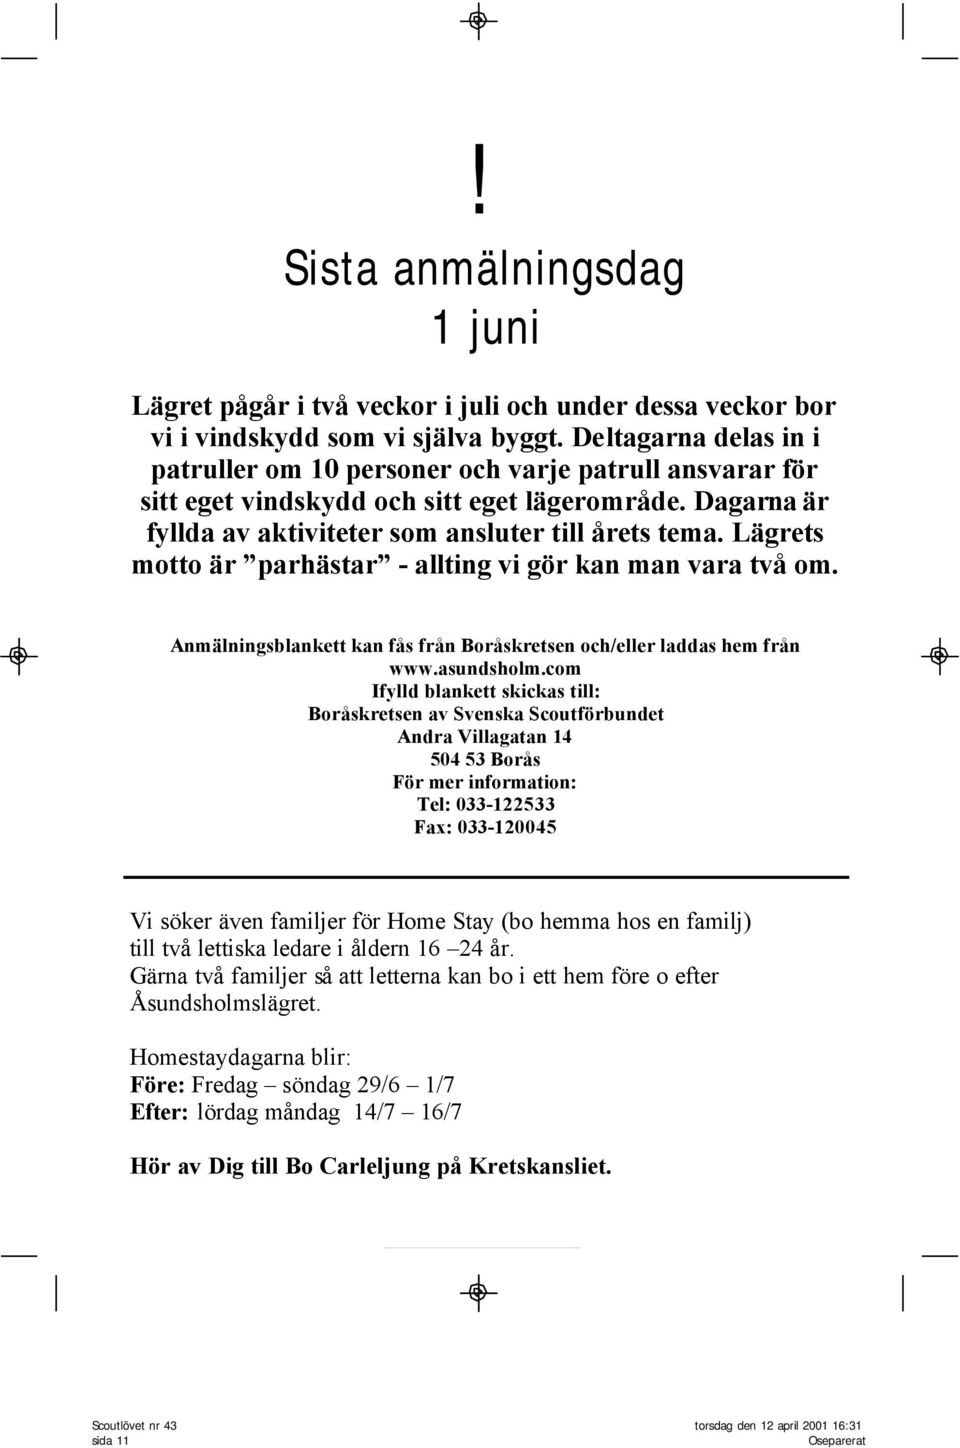 Lägrets motto är parhästar - allting vi gör kan man vara två om. Anmälningsblankett kan fås från Boråskretsen och/eller laddas hem från www.asundsholm.